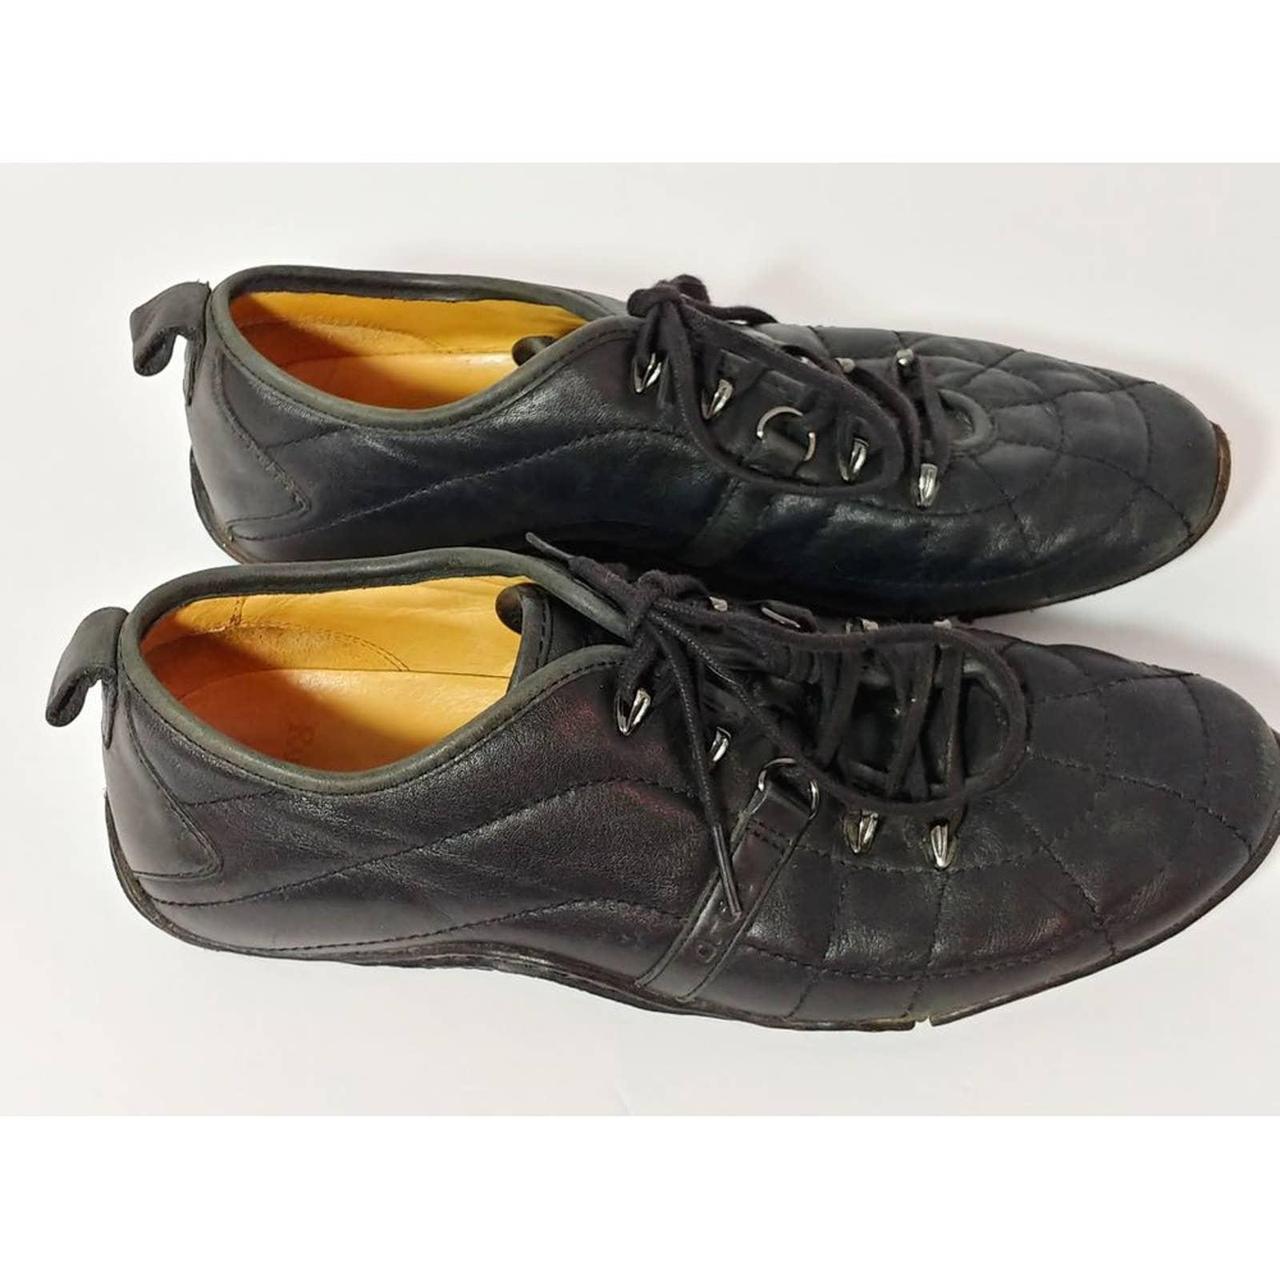 Vintage Men's Lace Up Leather Shoes Polo Ralph... - Depop